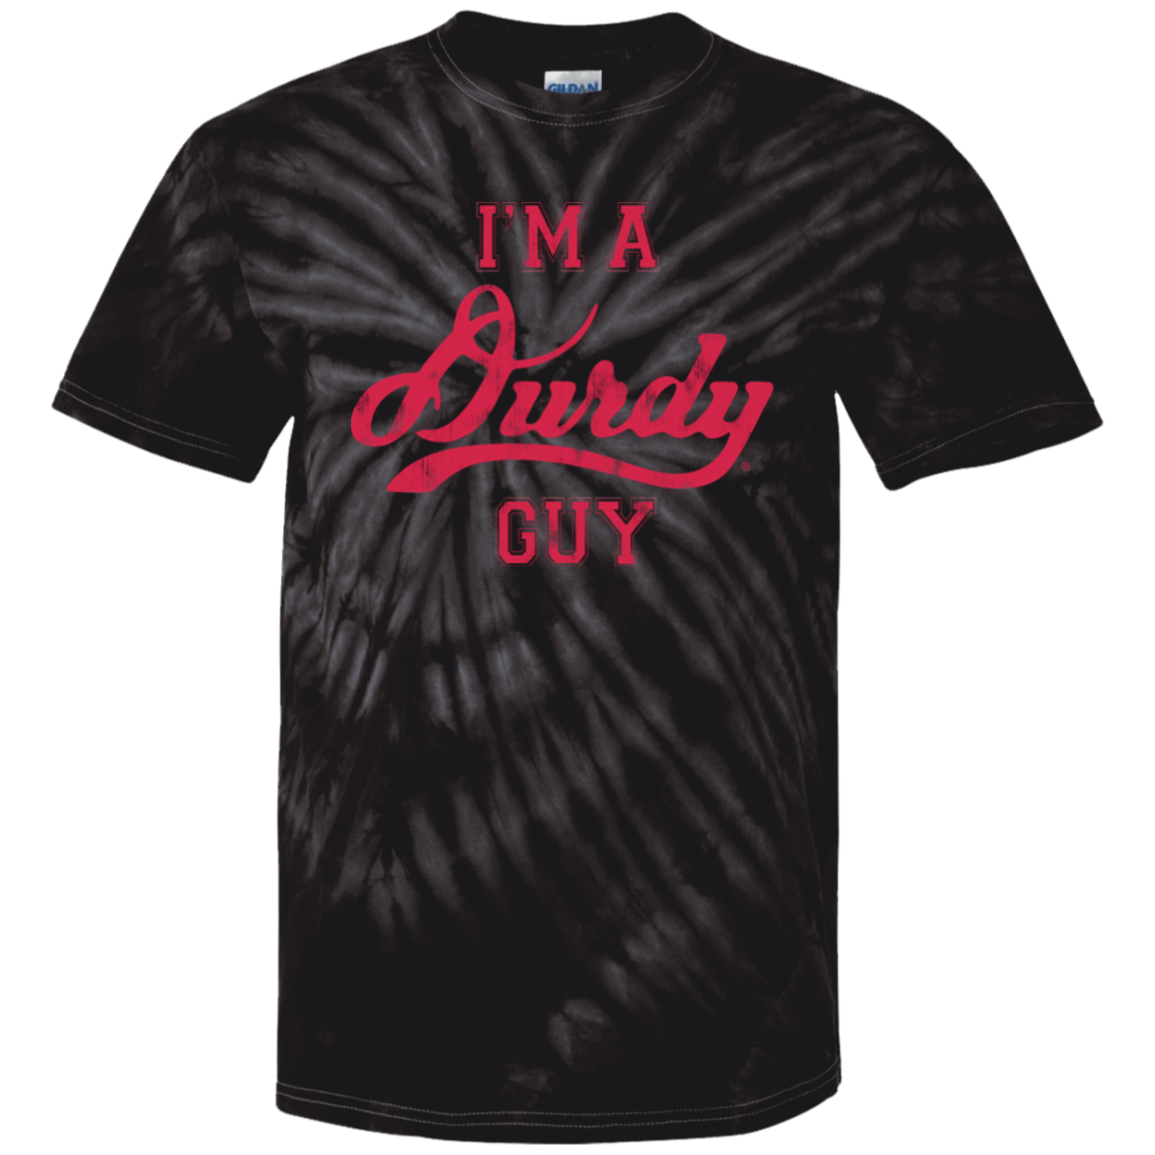 Durdy Guy 100% Cotton Tie Dye T-Shirt